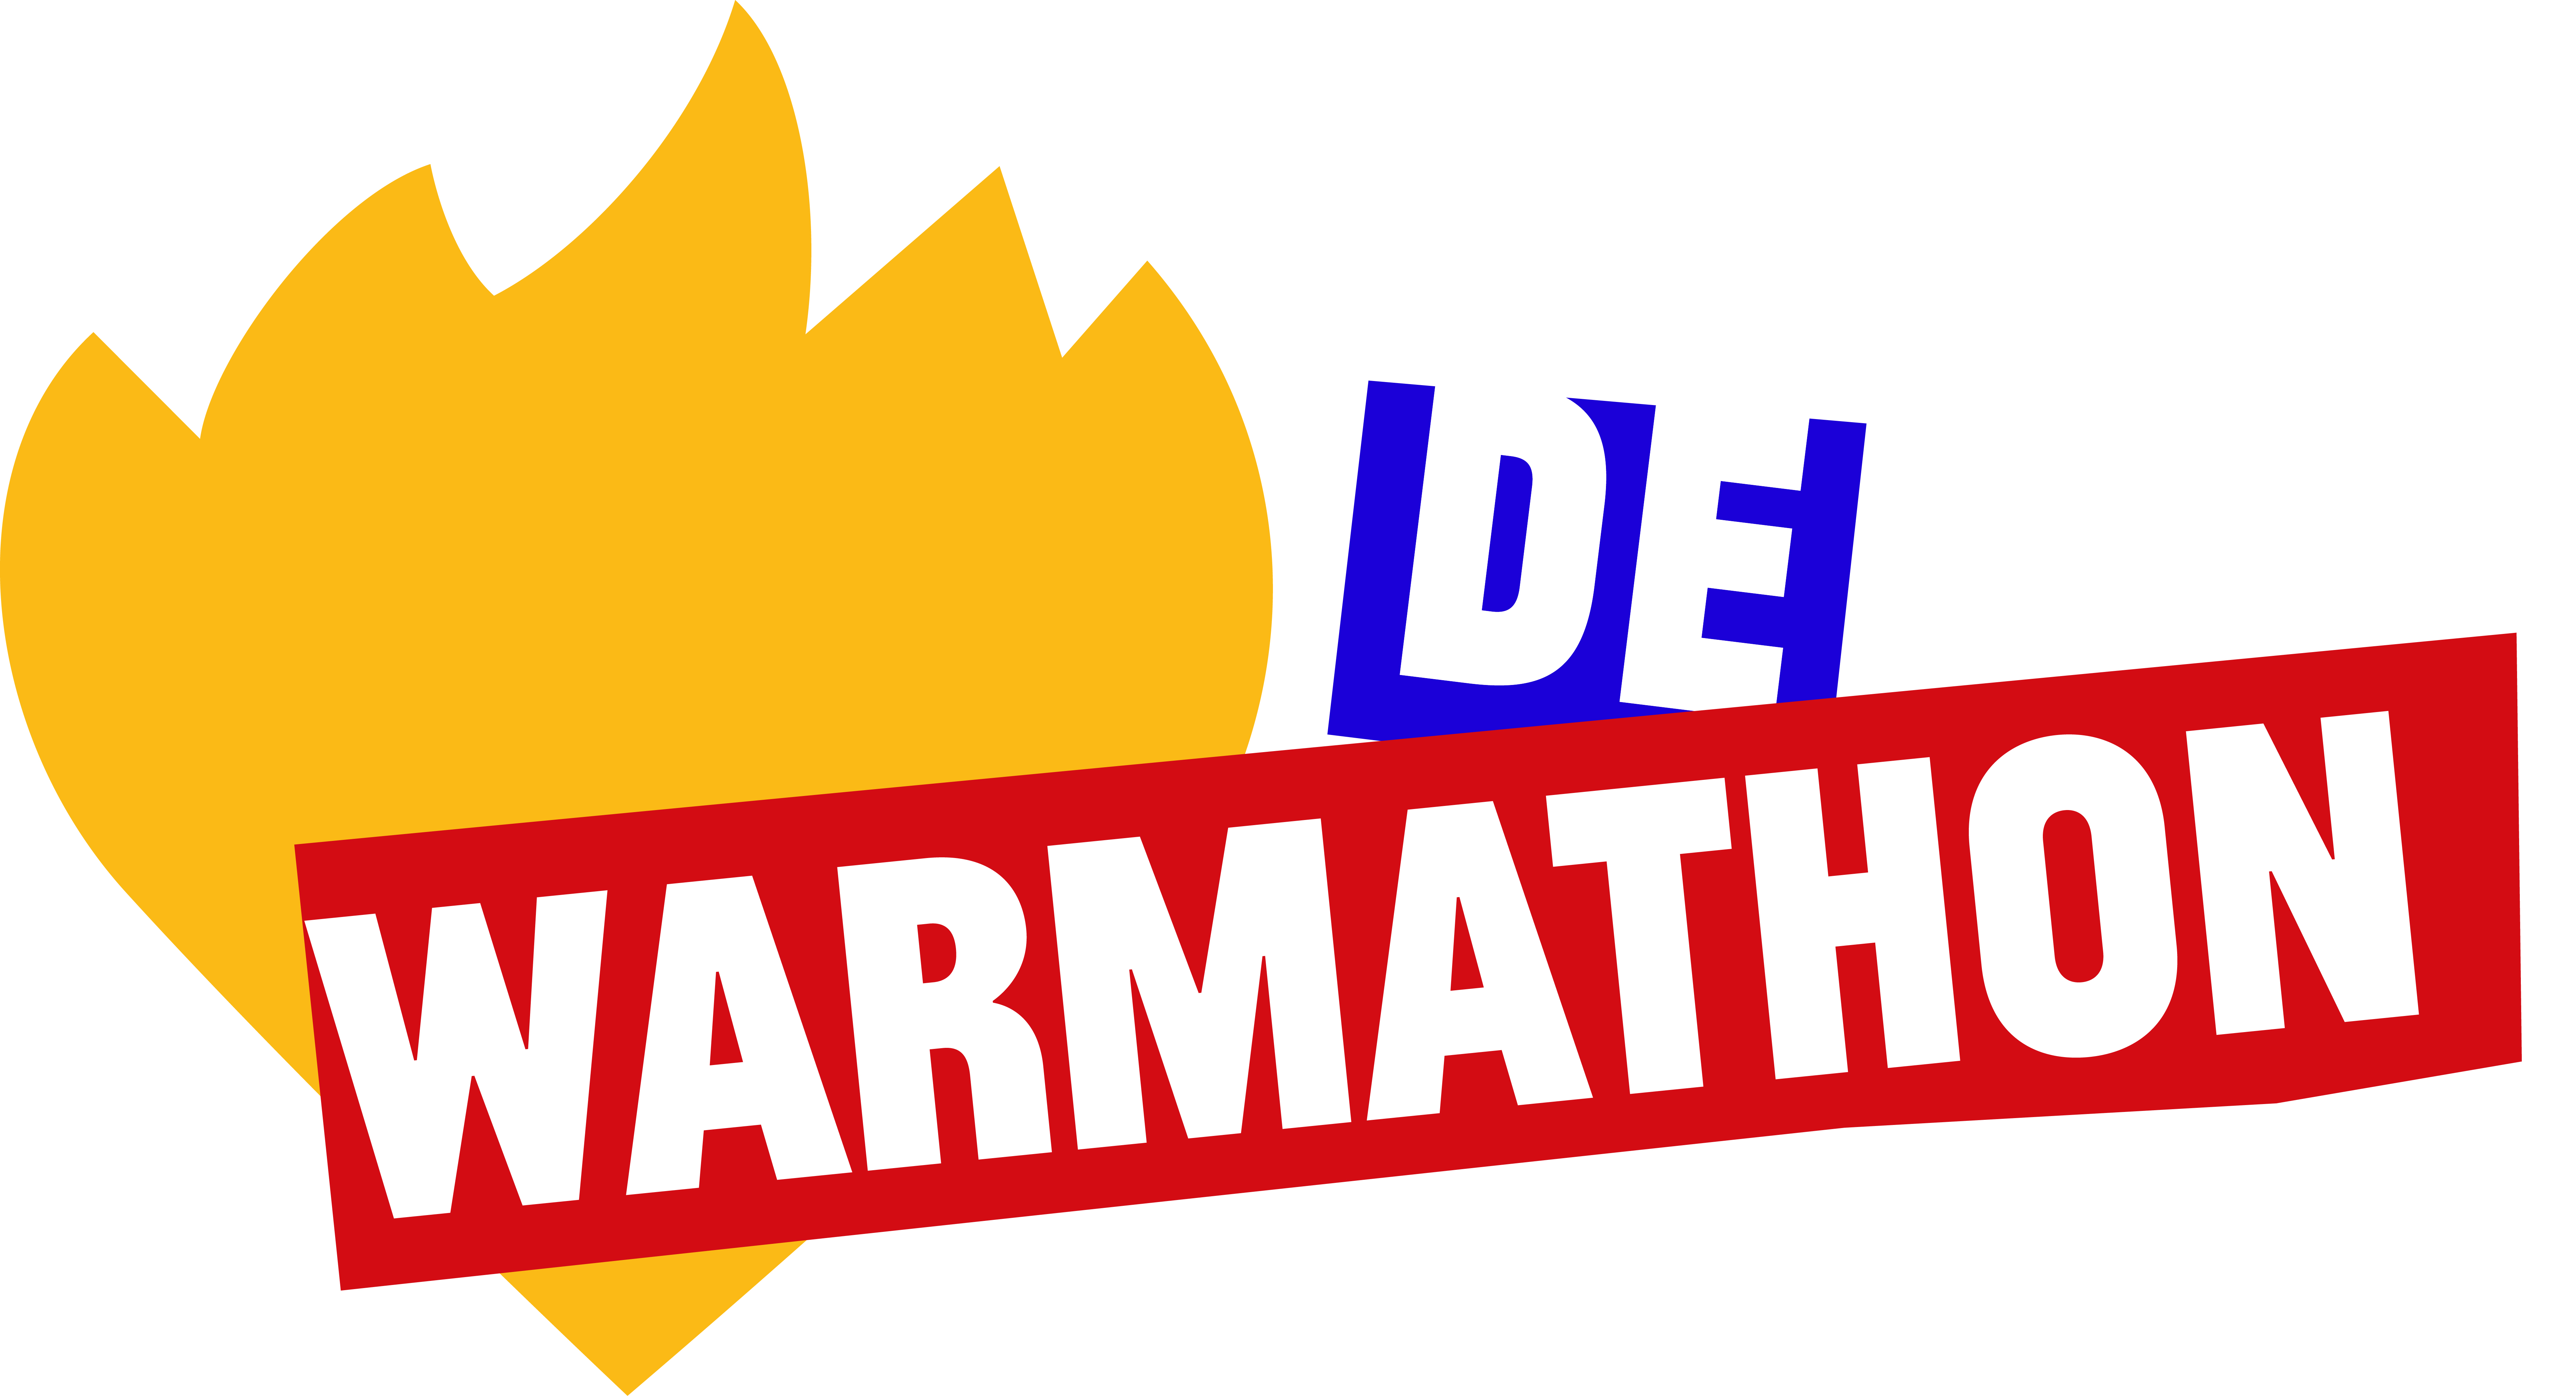 De Warmste Week lanceert vijfde editie van de Warmathon